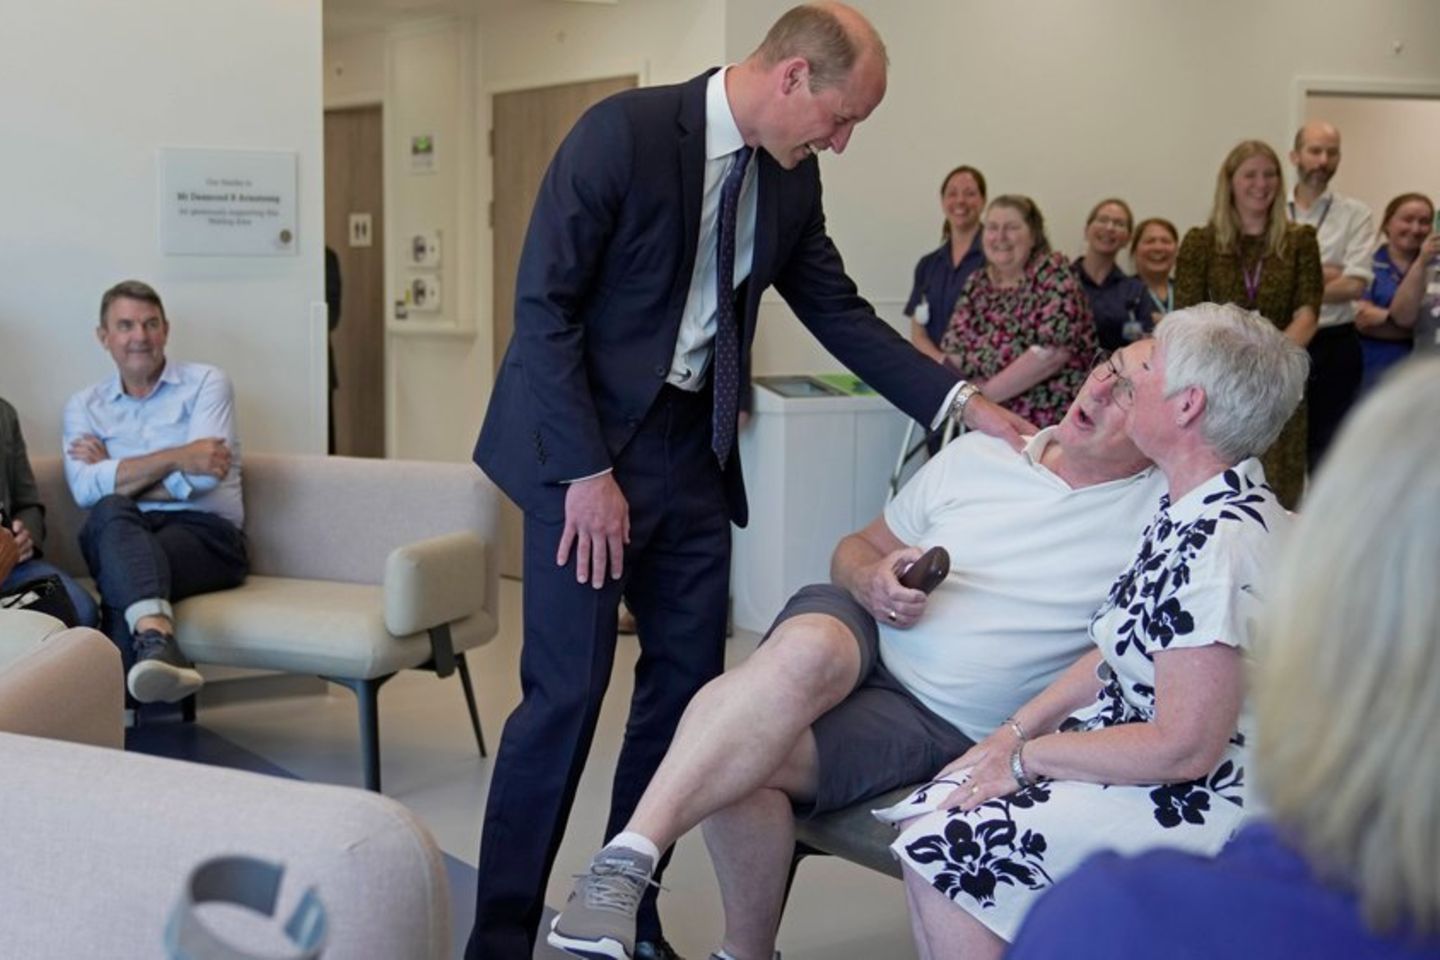 "Ich trage Absätze": Prinz William macht Witze über seine Größe